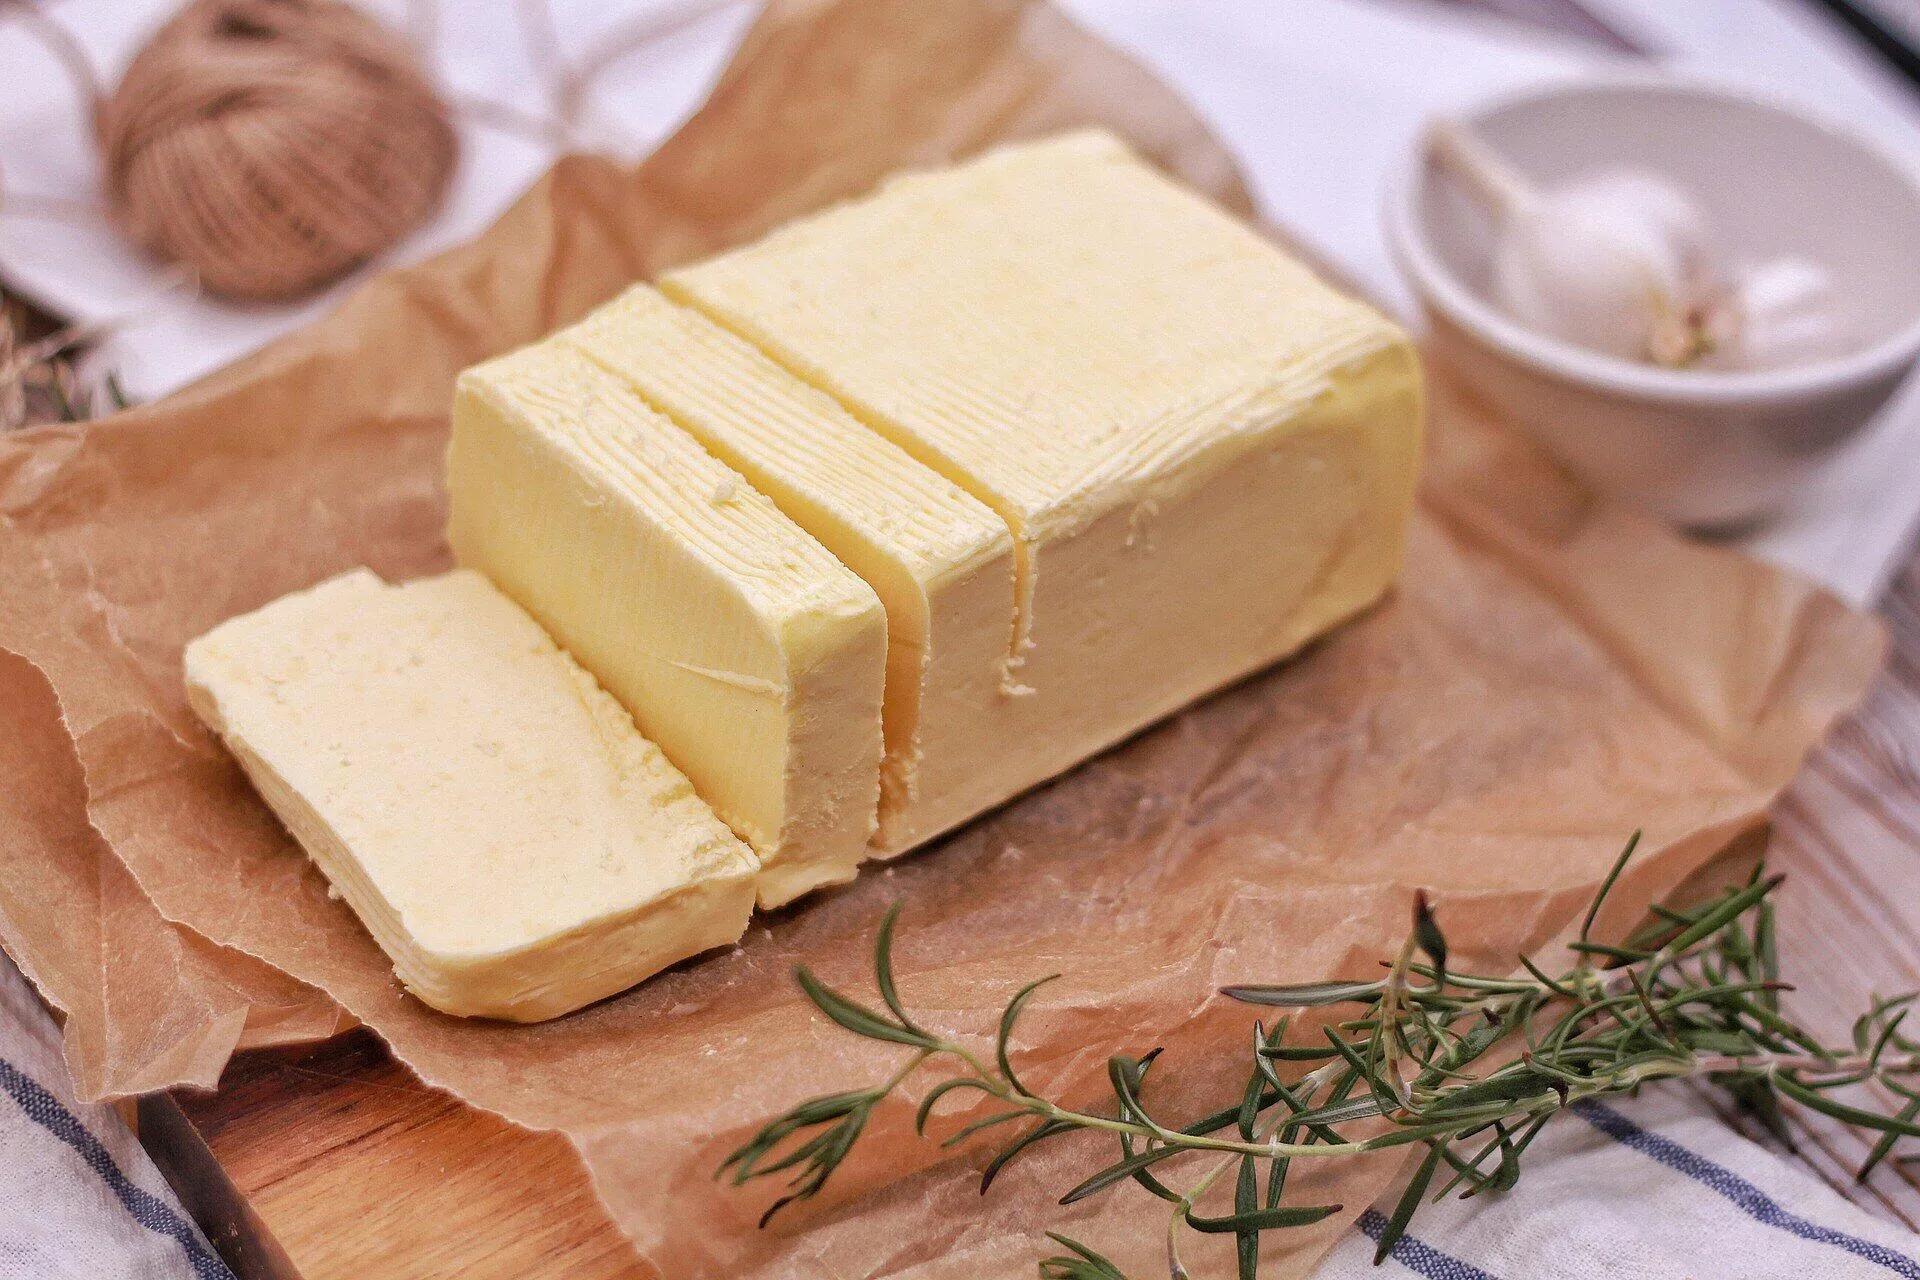 Butter selber machen in 3 Schritten: Blitz-Rezept dauert nur 15 Minuten